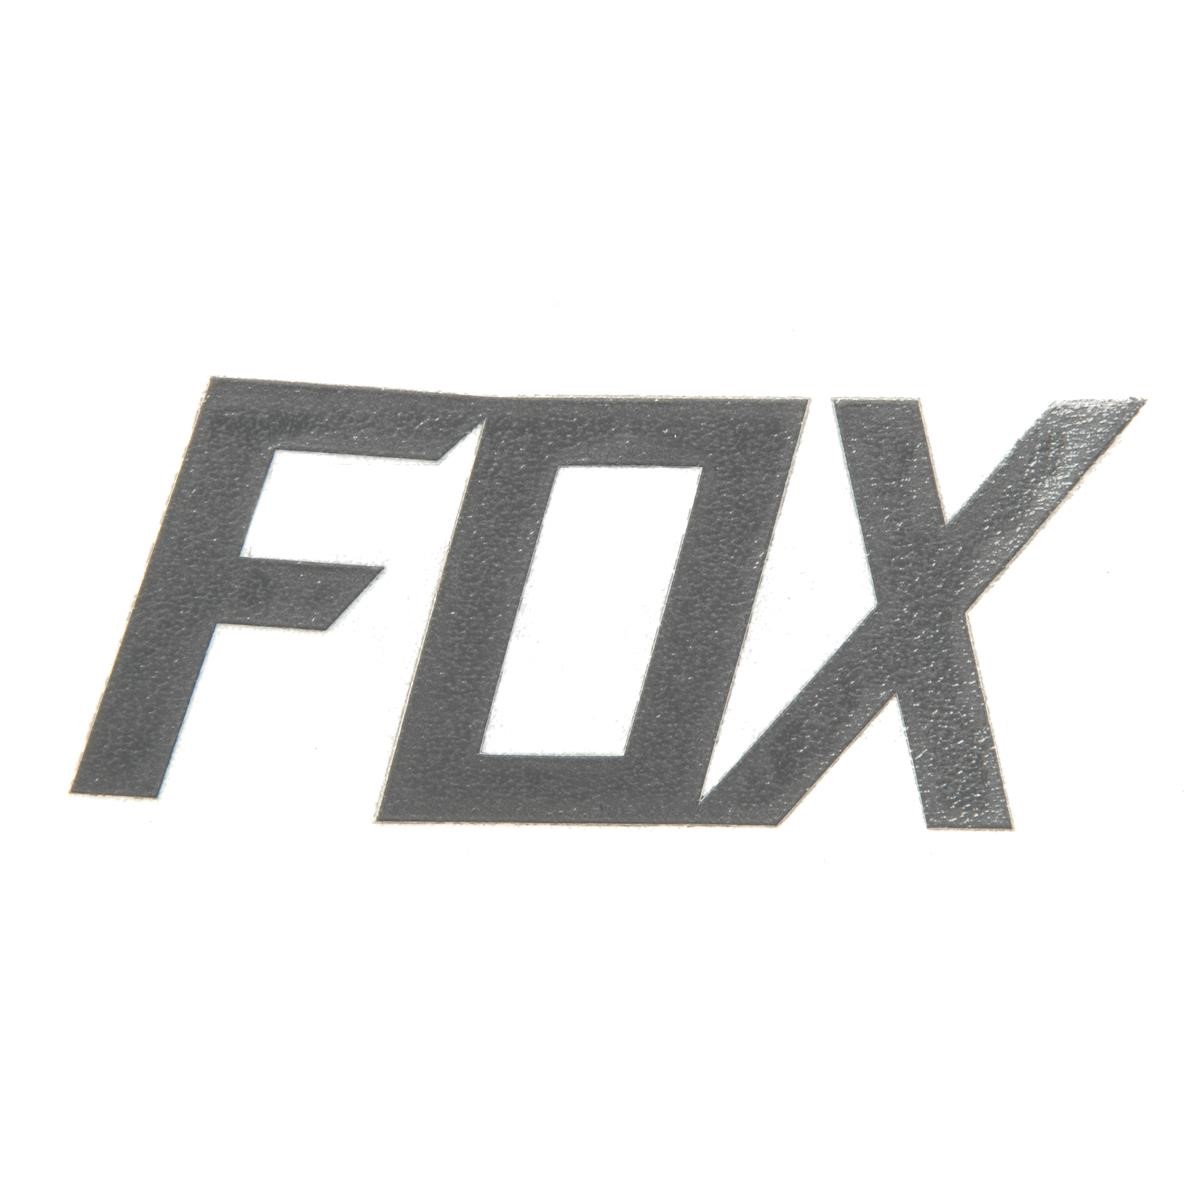 Fox Adesivi Fox TDC Opaco Charcoal - 7 cm